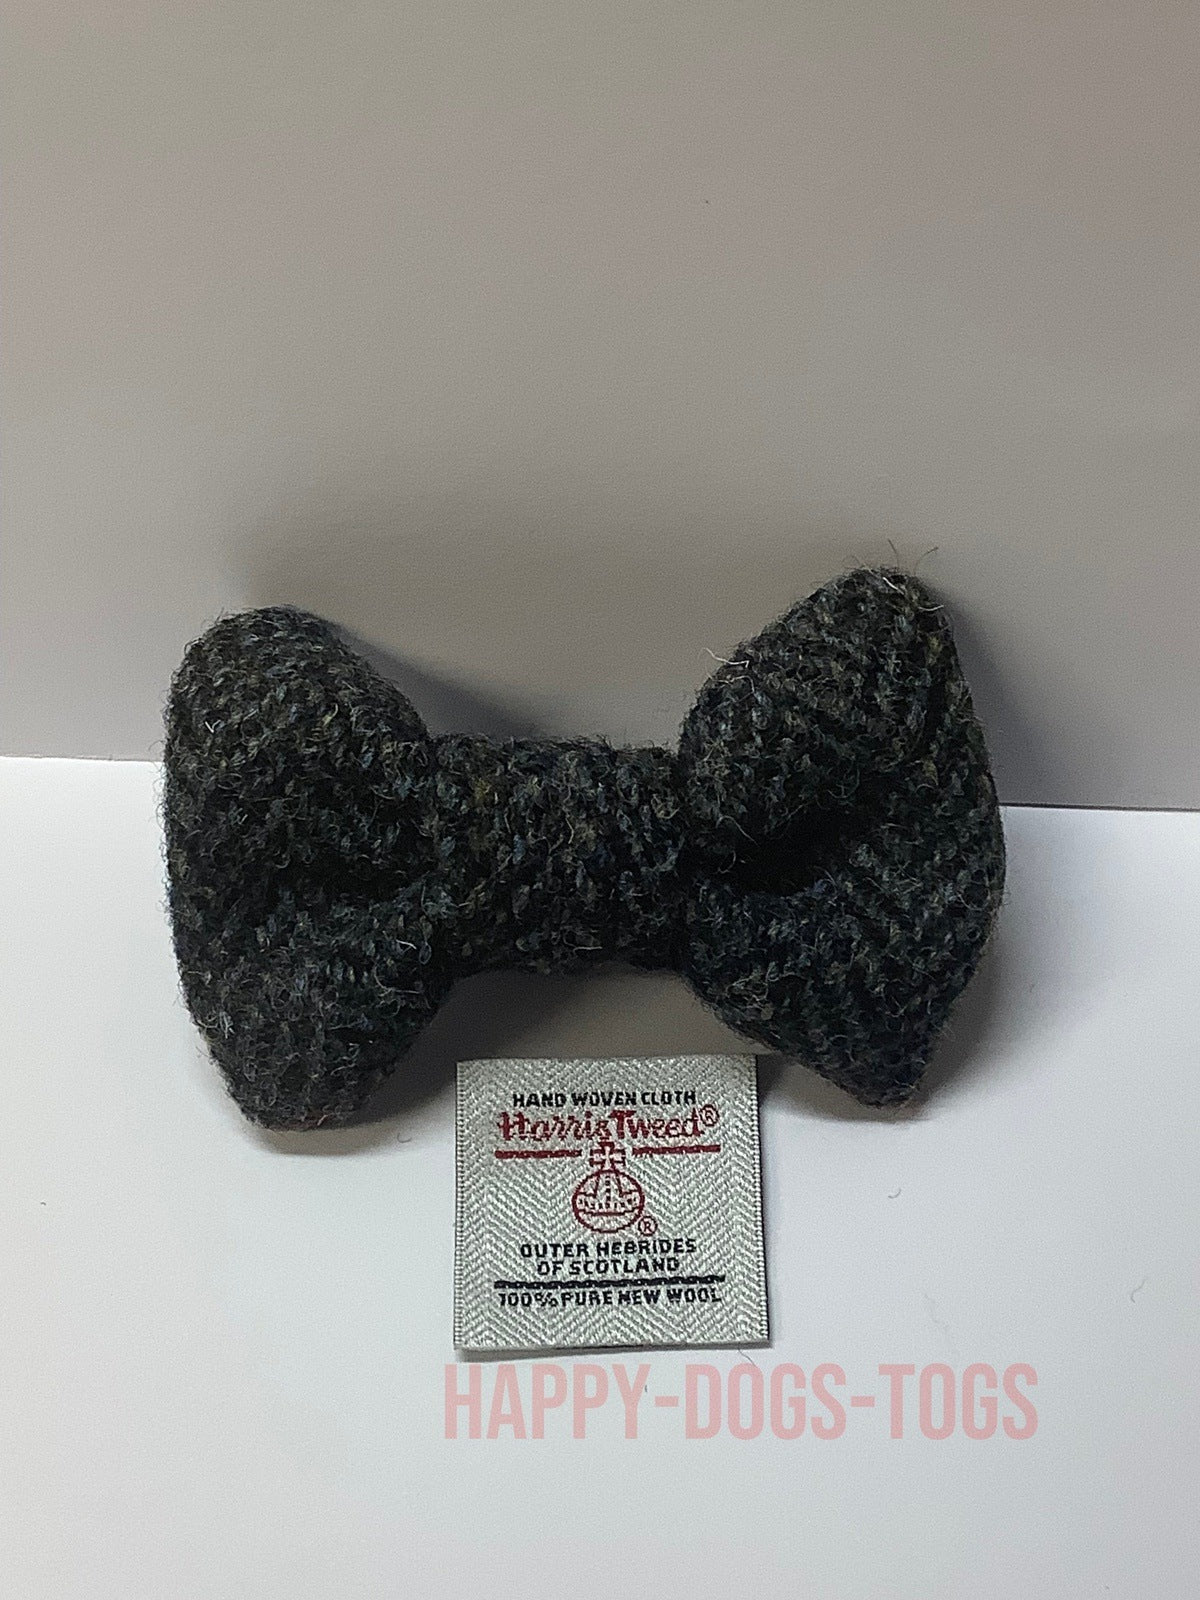 Grey, Black Herringbone Harris Tweed small bow tie for dogs